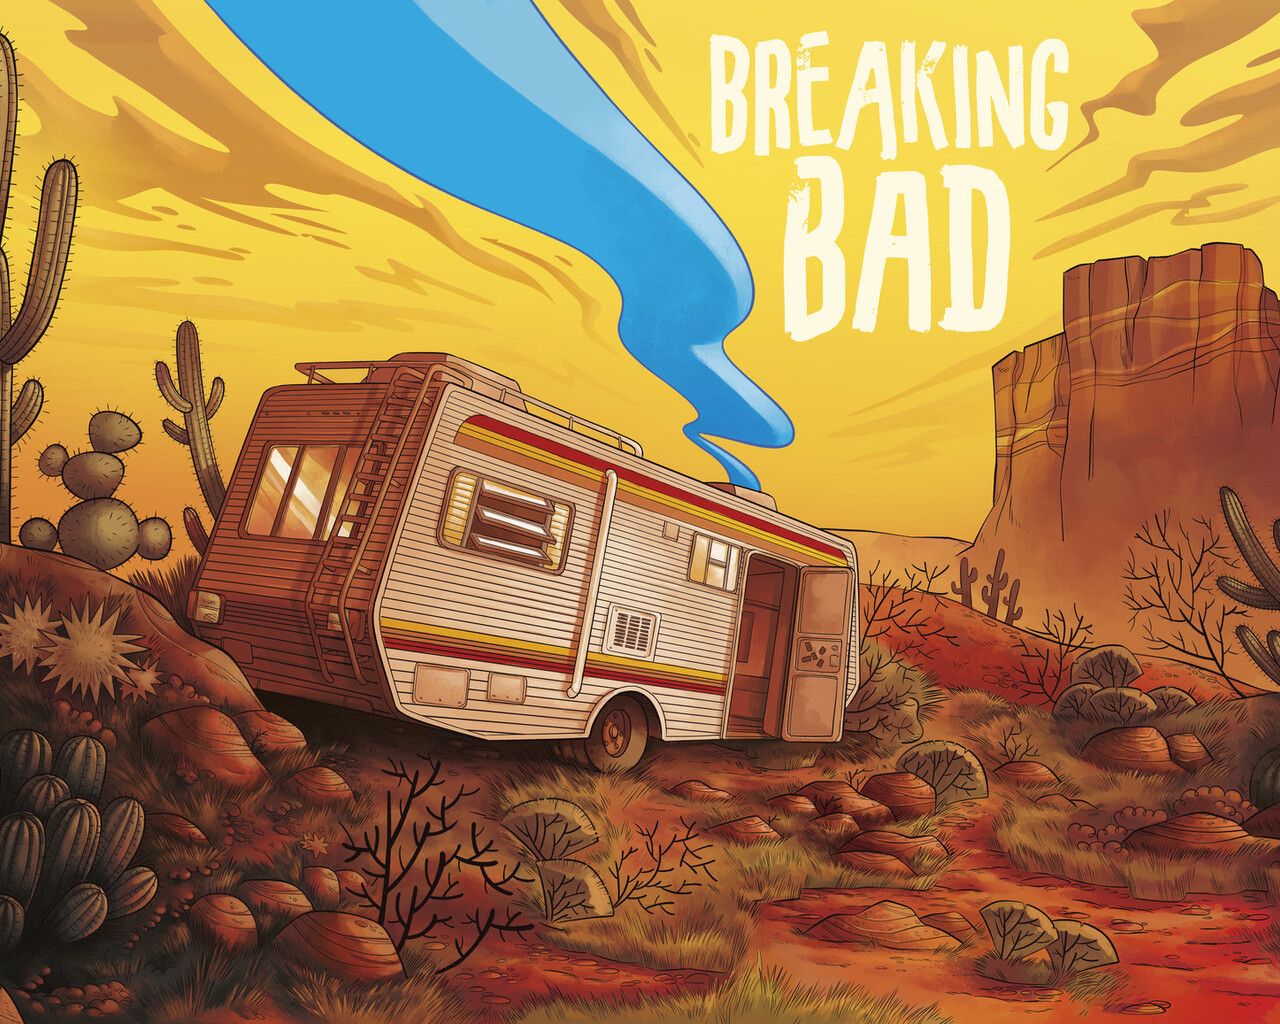 breaking-bad-van-artwork-27-1280x1024.jpg